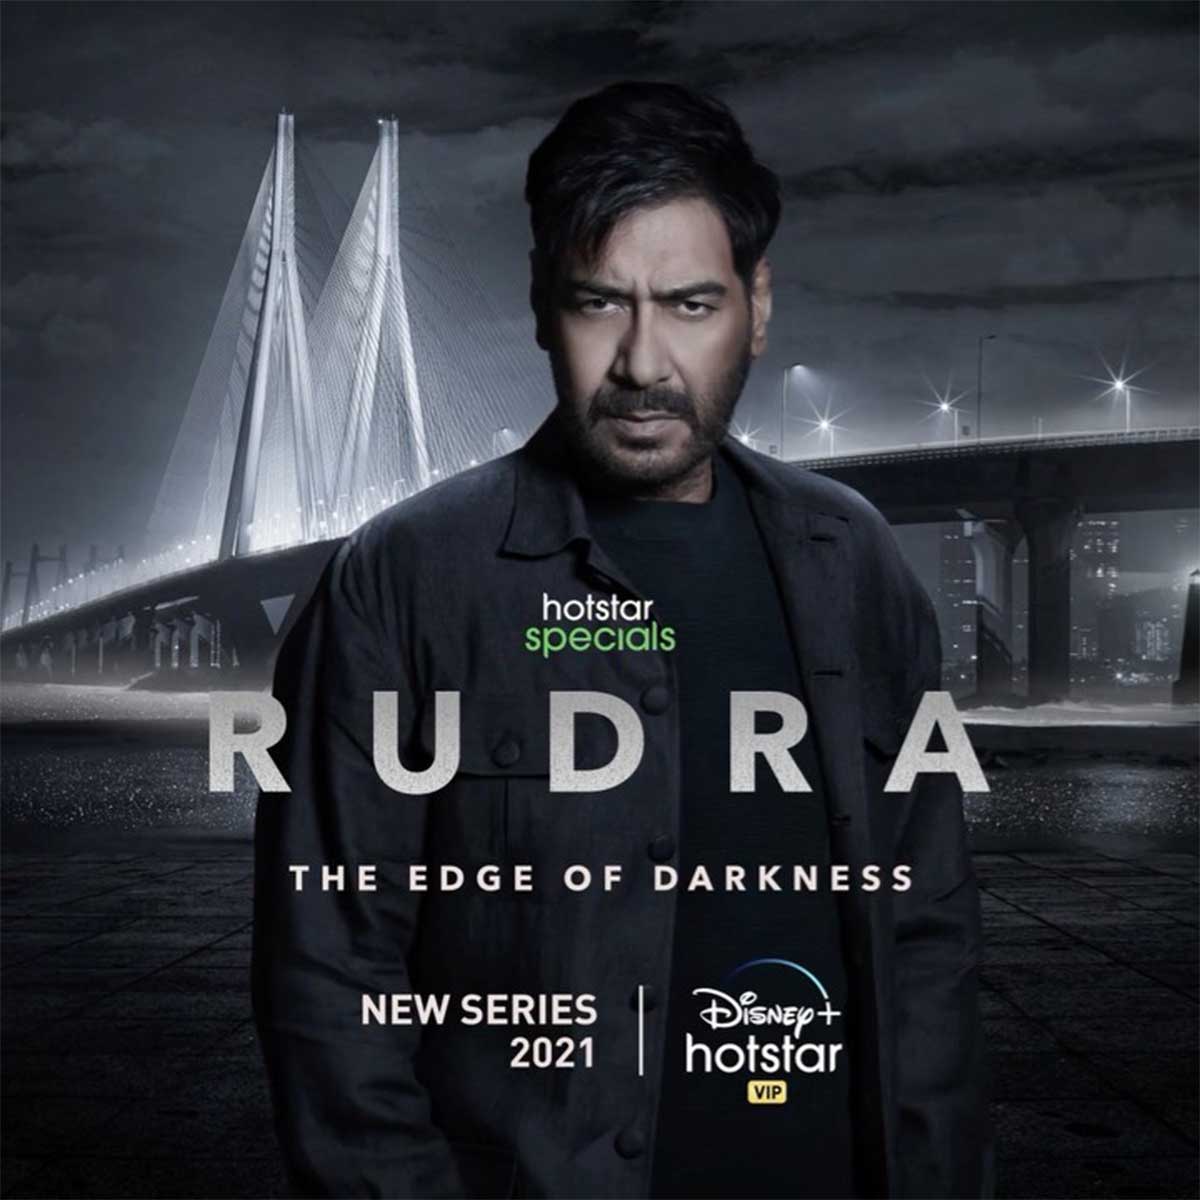 Rudra marks Ajay Devgn's digital debut - Rediff.com